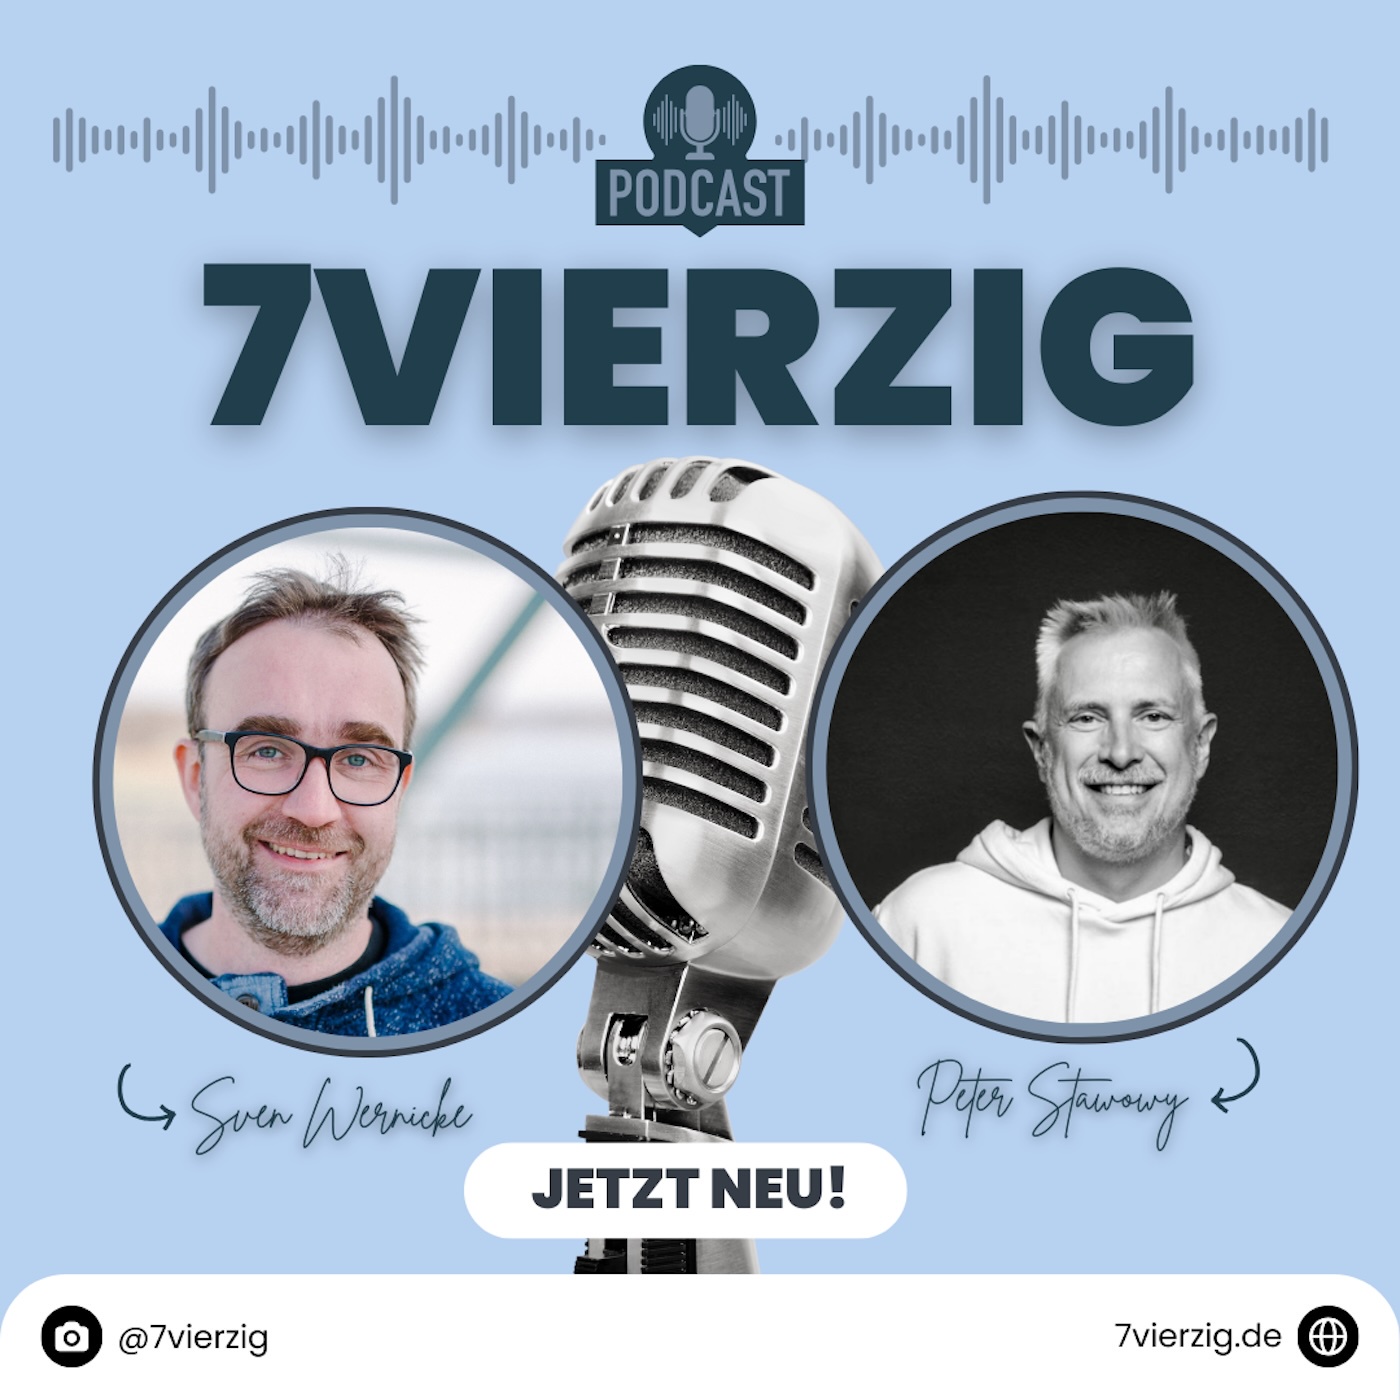 7VIERZIG - Der Podcast von, für und mit Männern im mittleren Alter